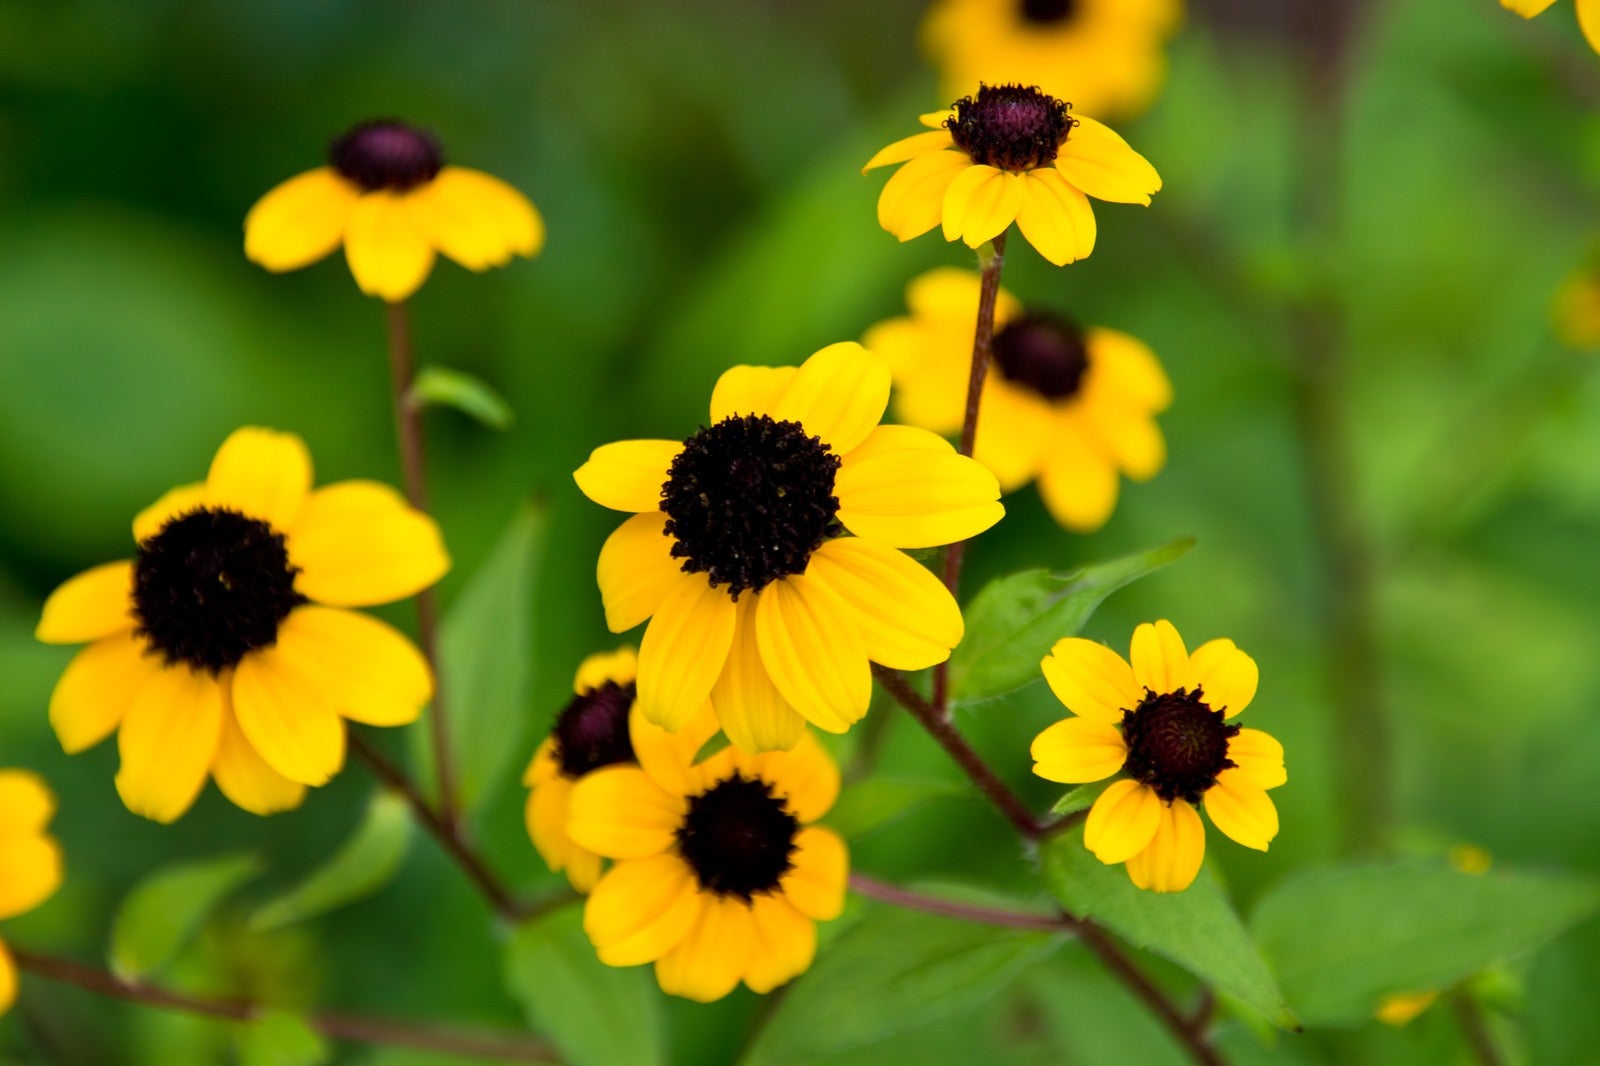 「黄色いお花」の写真